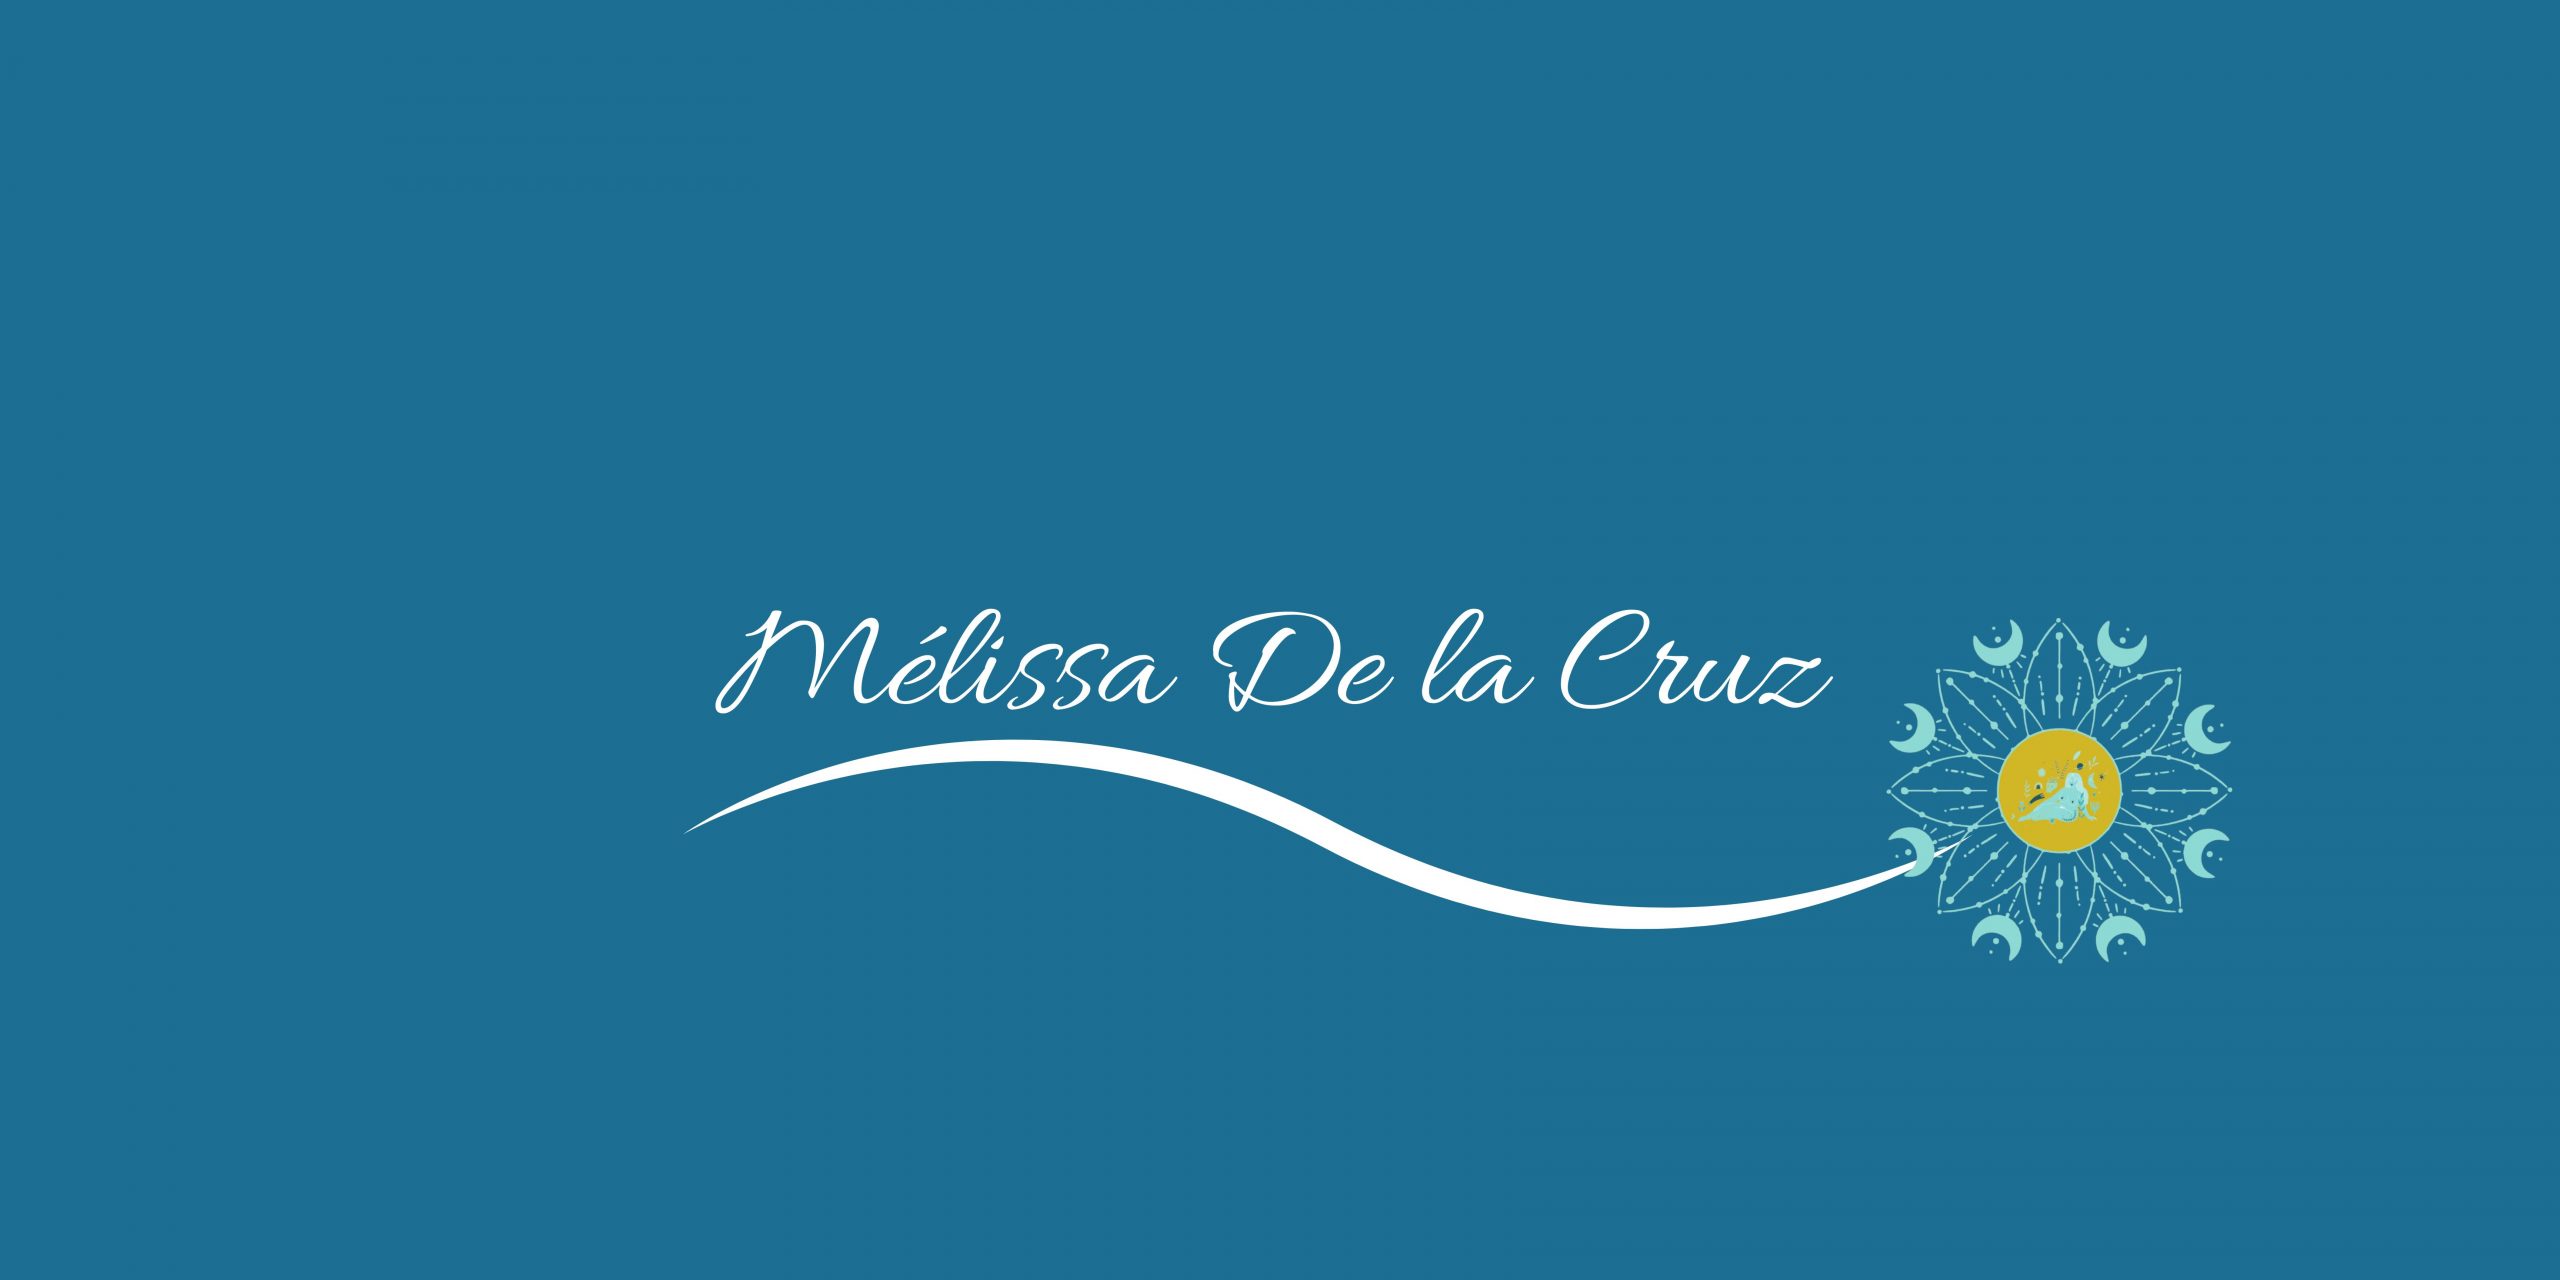 Mélissa De la Cruz -  Formations et accompagnements holistiques - Chants sacrés - Féminin sacré - Soins sacrés